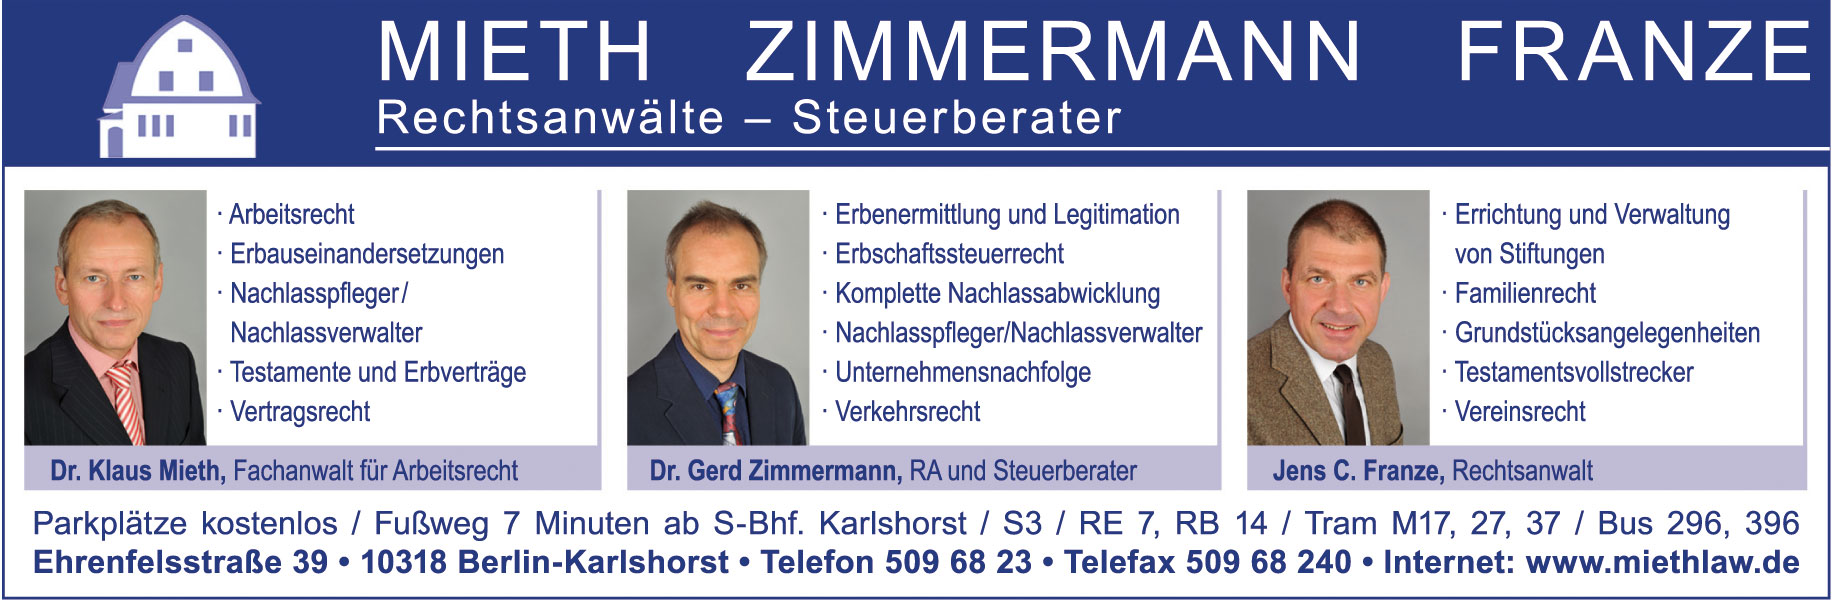 Mieth Zimmermann Franze – Rechtsanwälte GbR – Steuerberater